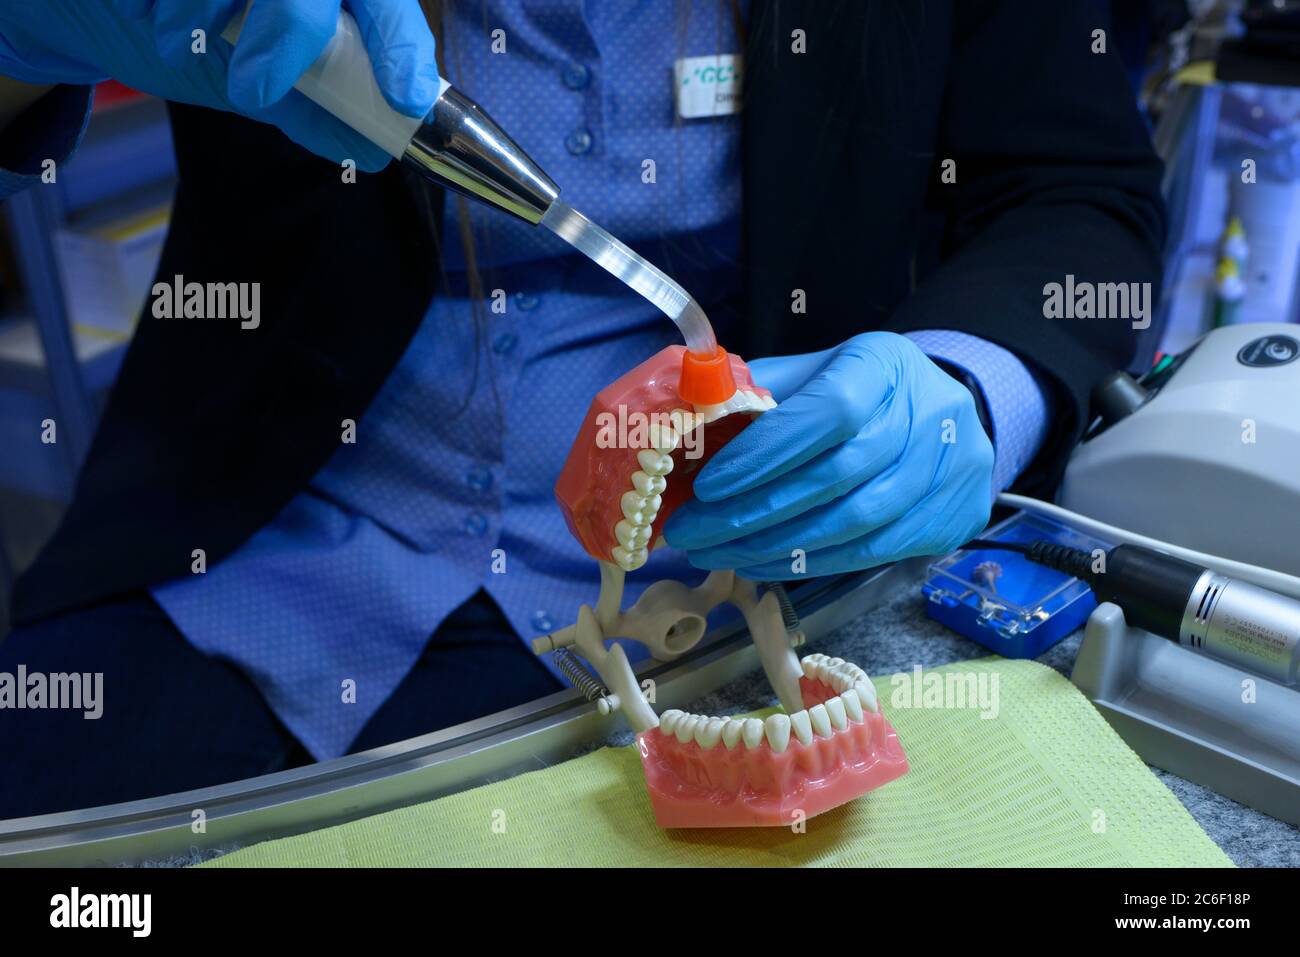 Montrer la voie du traitement dentaire. Main de femme en gants bleus brillant sur le typopótoque, moulage plastique des mâchoires et des dents humaines, avec la lampe photopolymère Banque D'Images